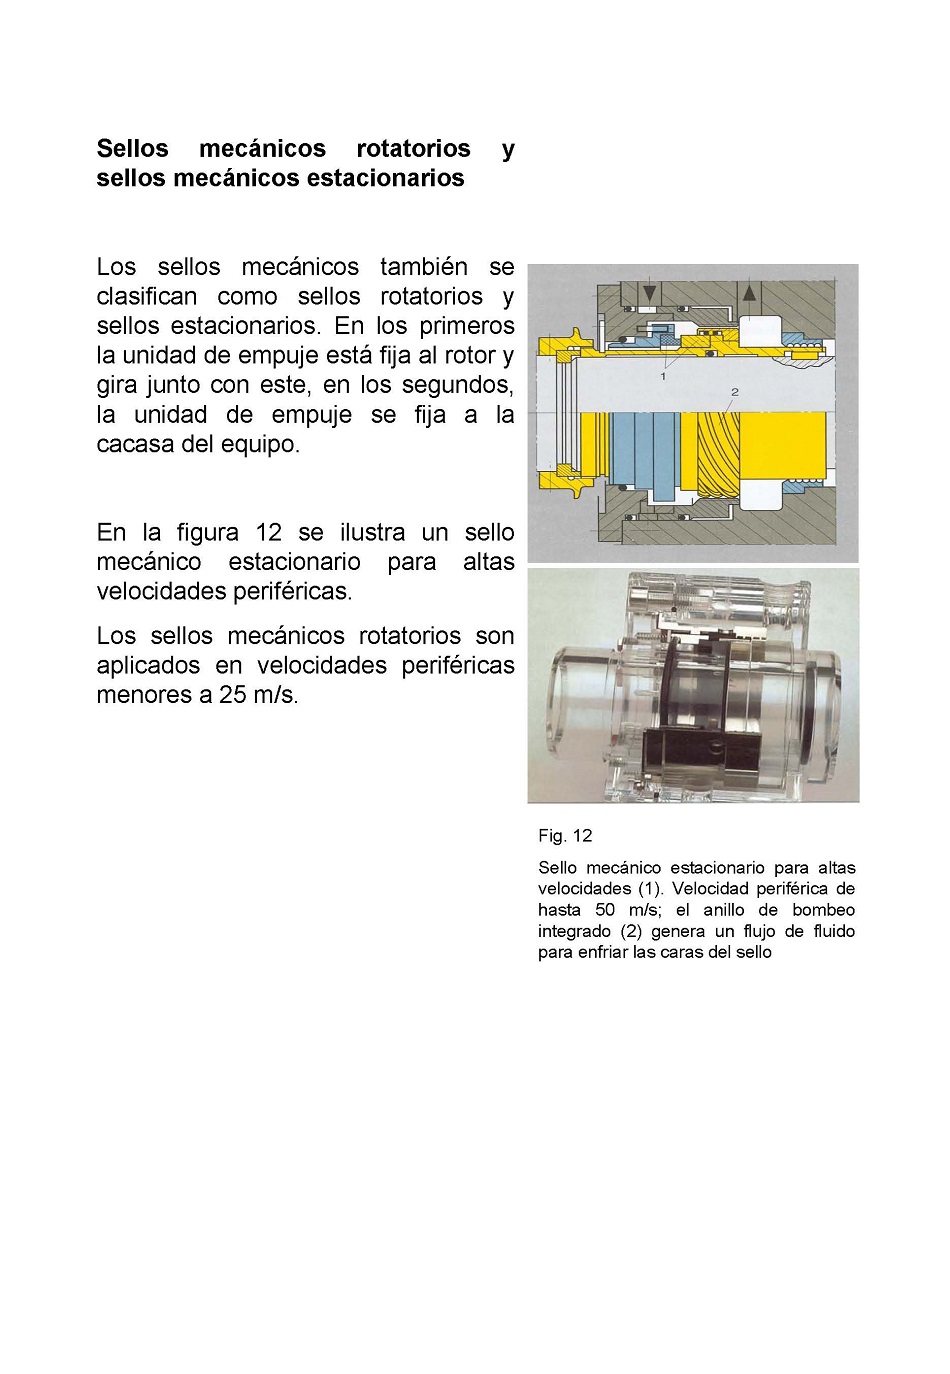 Sellado de equipos mecánicos rotatorios. Página 21